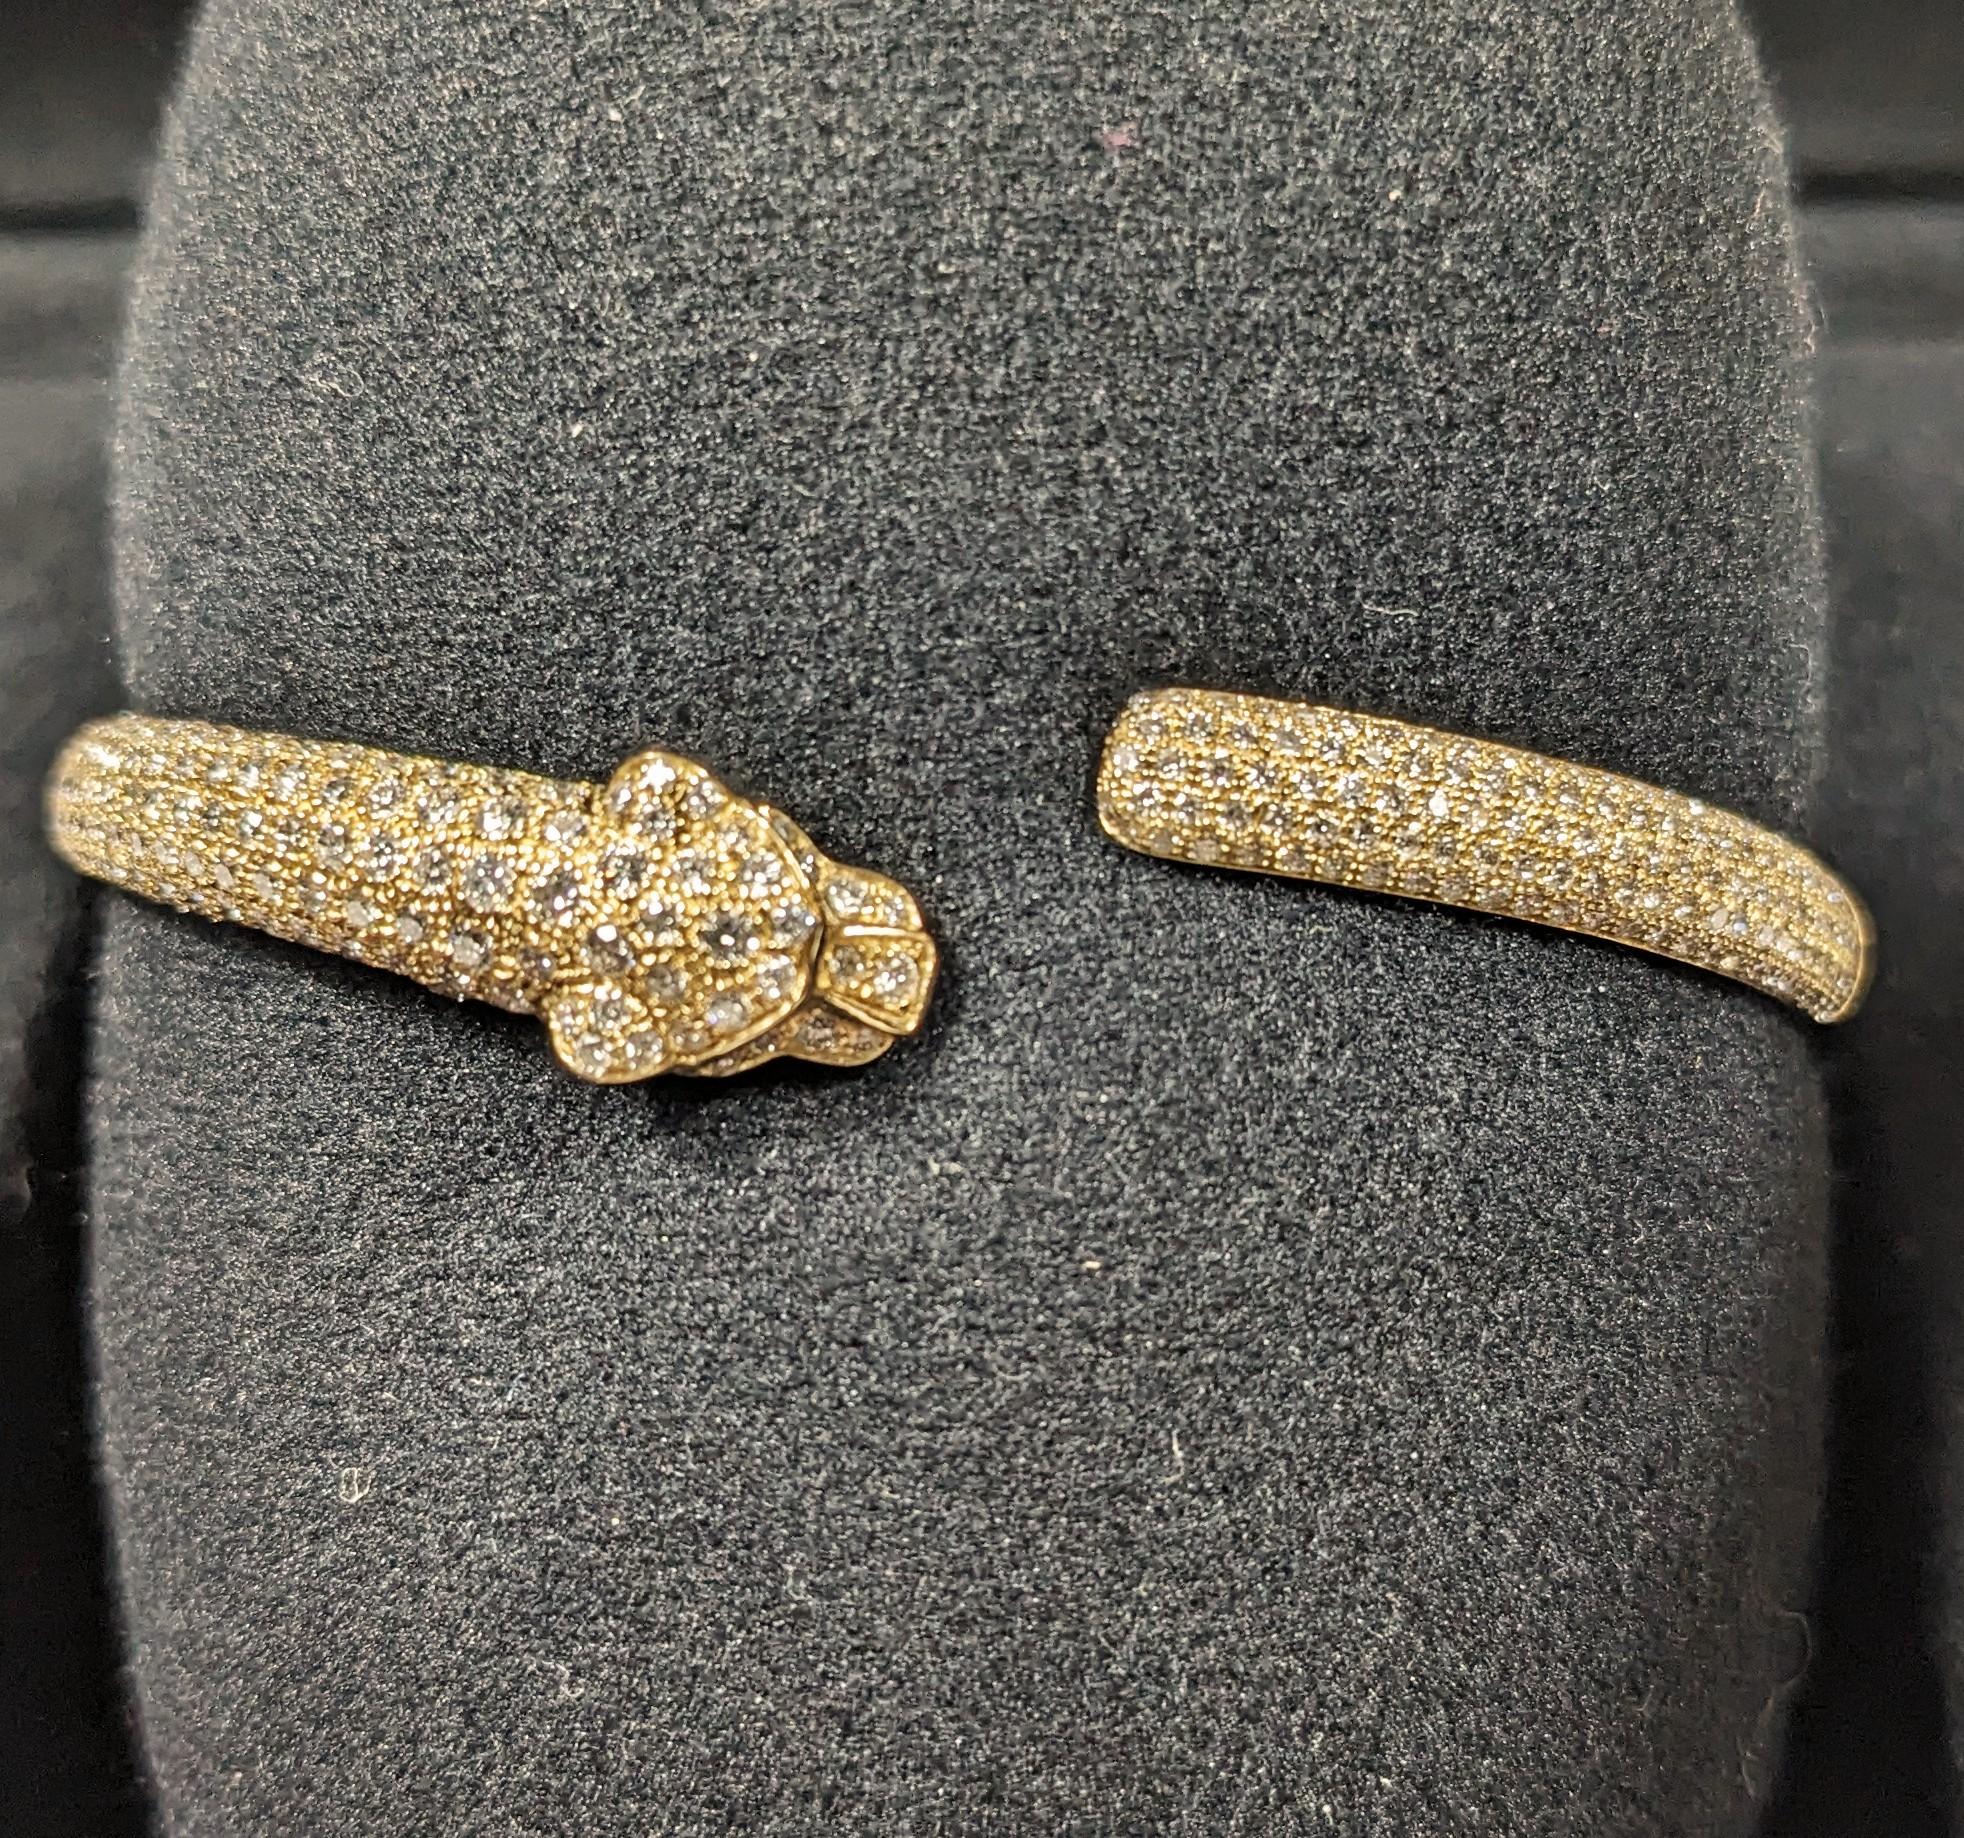 Cartier Panthere Armband 18k Gold mit Diamanten, Smaragd und Onyx in Größe 17. 
Original im Shop für 51.500€
Mit Box und Papieren

Die Panther sind seit dem frühen 20. Jahrhundert Teil der Cartier-Schmuckmenagerie. Die Panthère ist erstmals auf